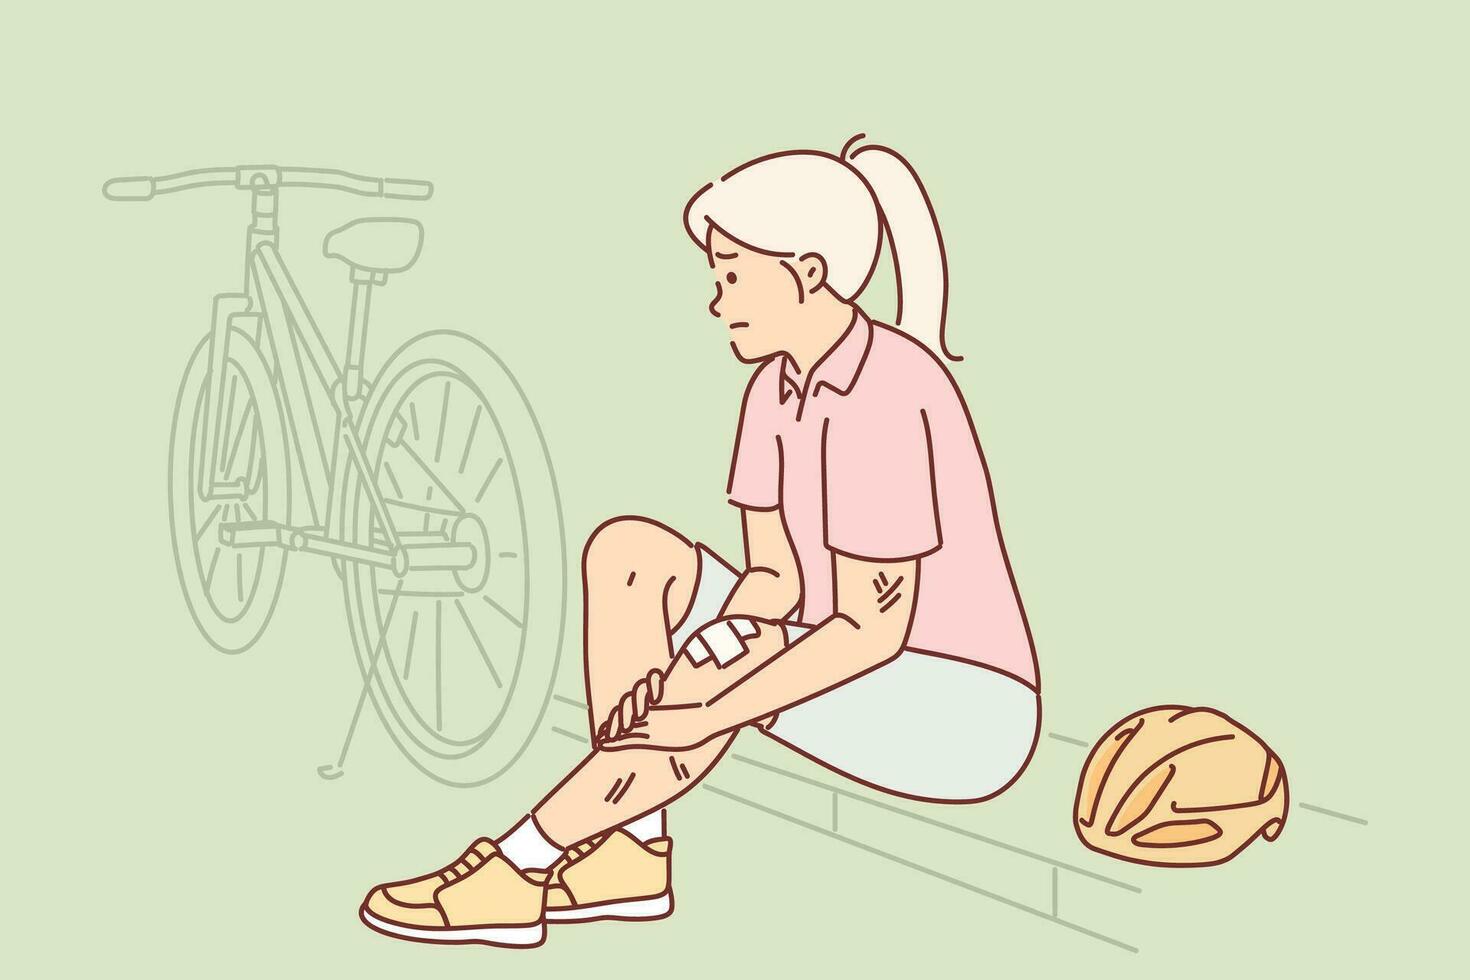 femme cycliste a blessé jambe après chute de bicyclette et est assis sur freiner dans avoir besoin de médecin aider. concept de accident pendant bicyclette balade dû à négligent équitation et violations de sécurité règles vecteur